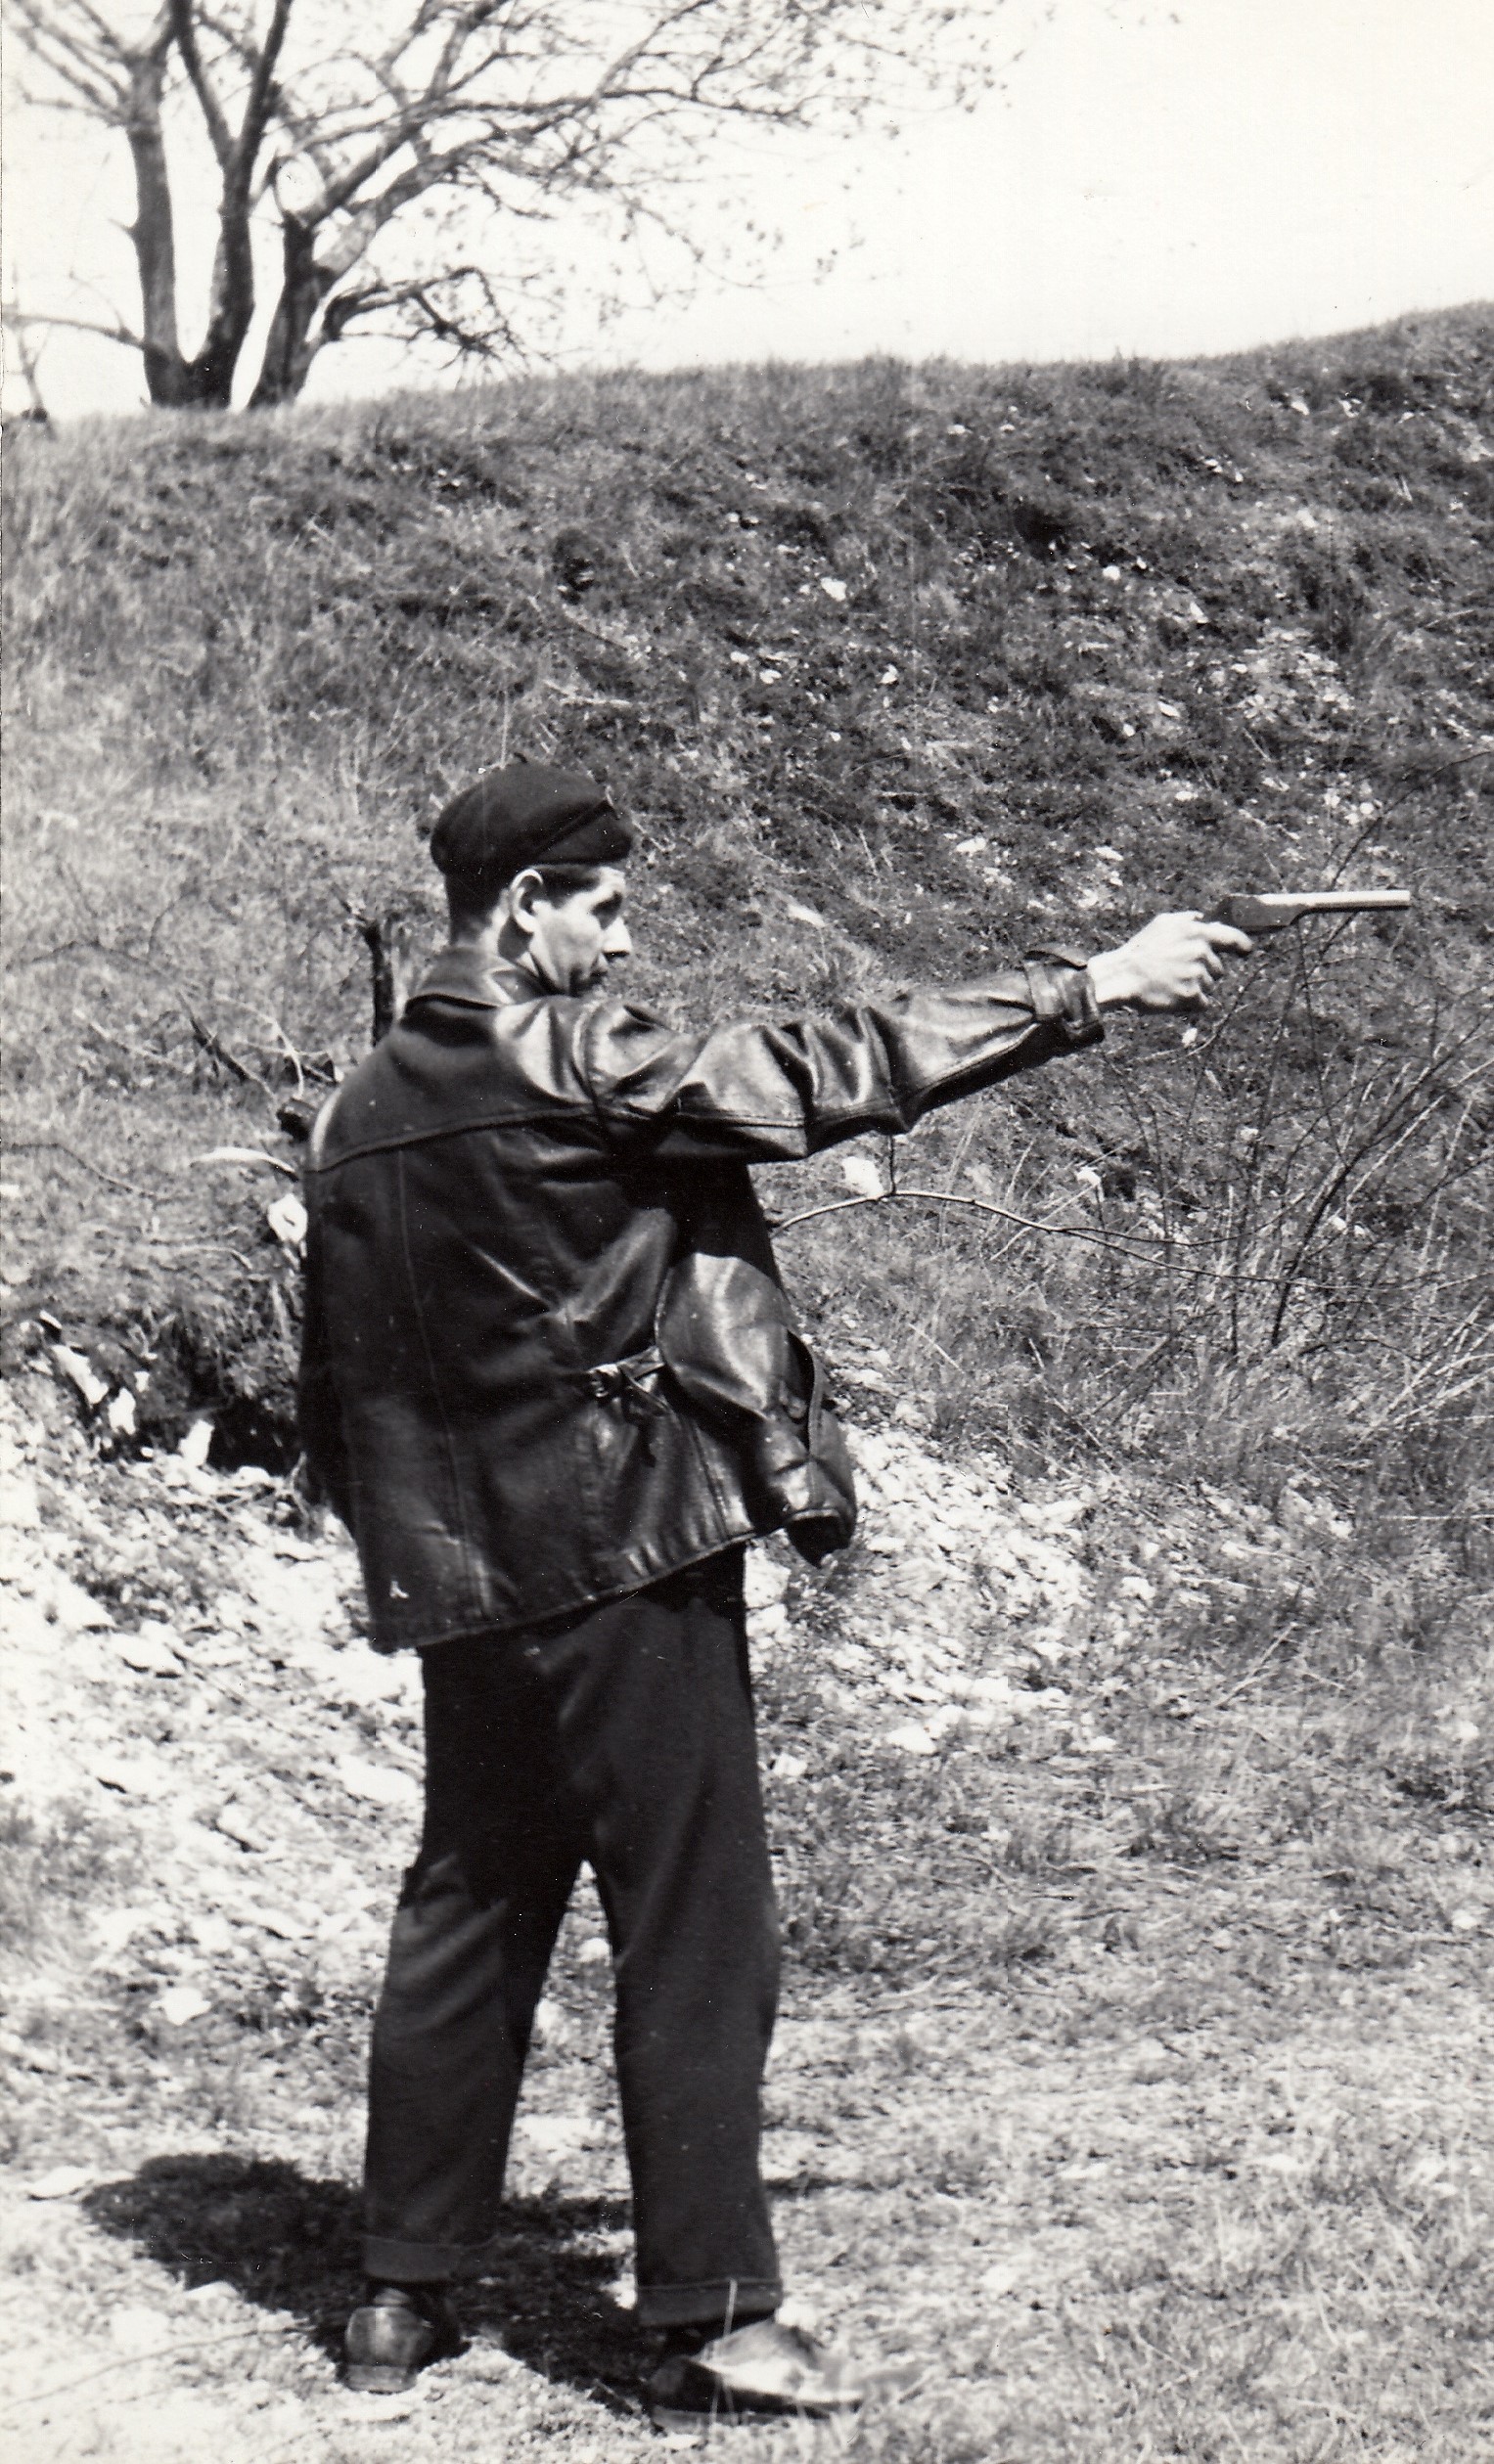 Pamětník při střelbách jako člen Svazu pro spolupráci s armádou (Svazarm), Varnsdorf, 1950